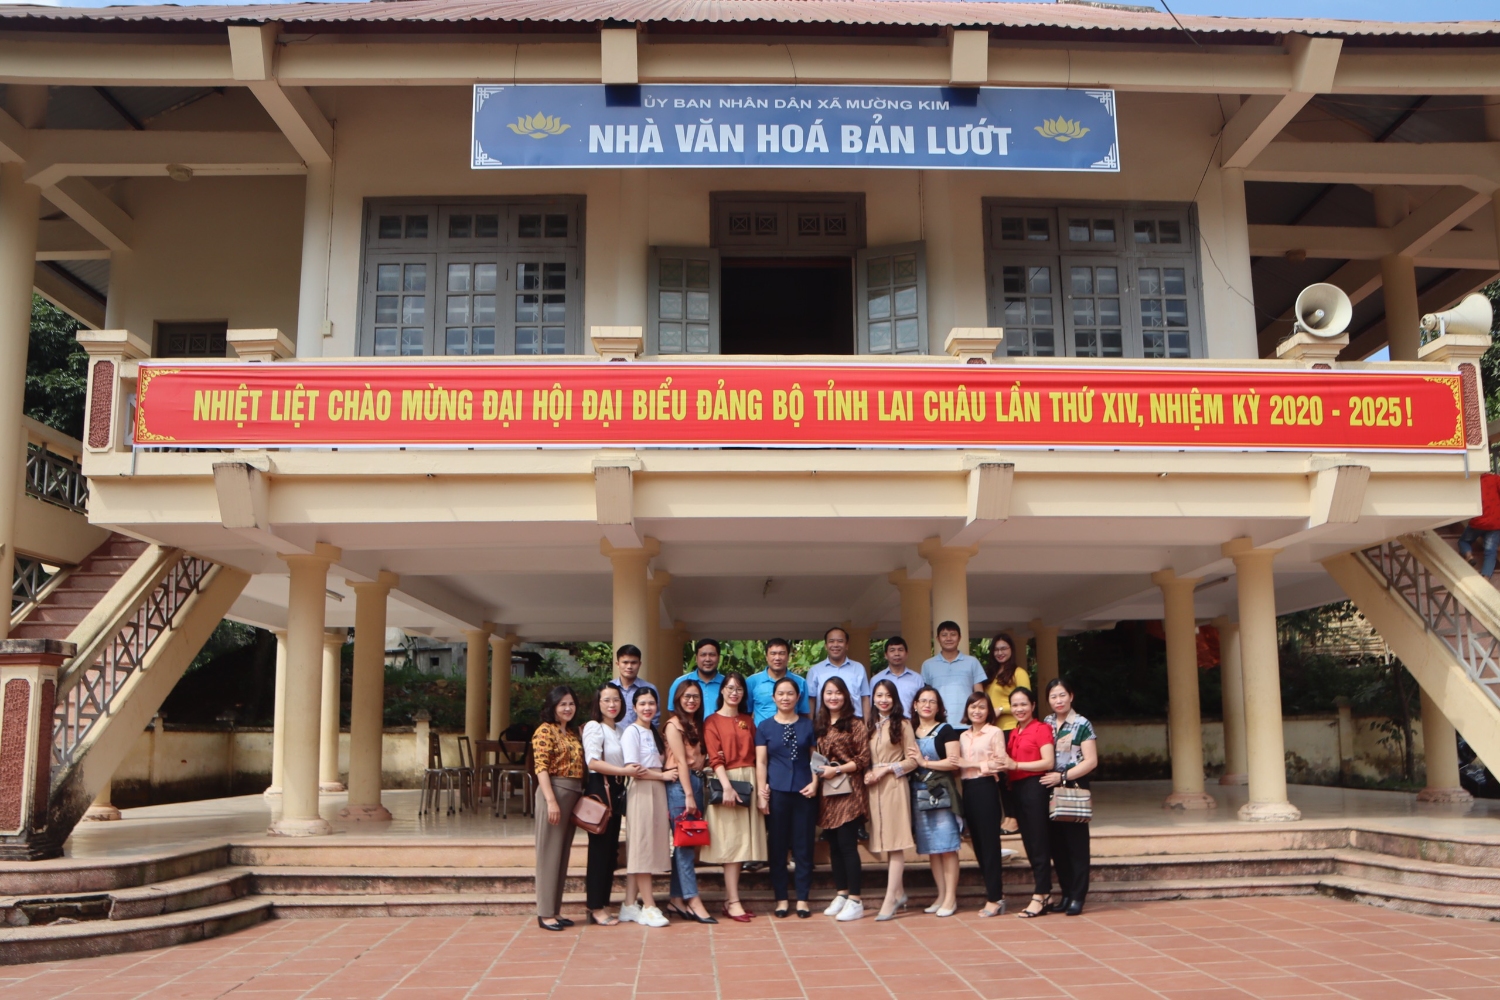 Cán bộ, đoàn viên, CNVCLĐ Báo Lai Châu thăm Nhà văn hóa bản Lướt (xã Mường Kim, huyện Than Uyên).